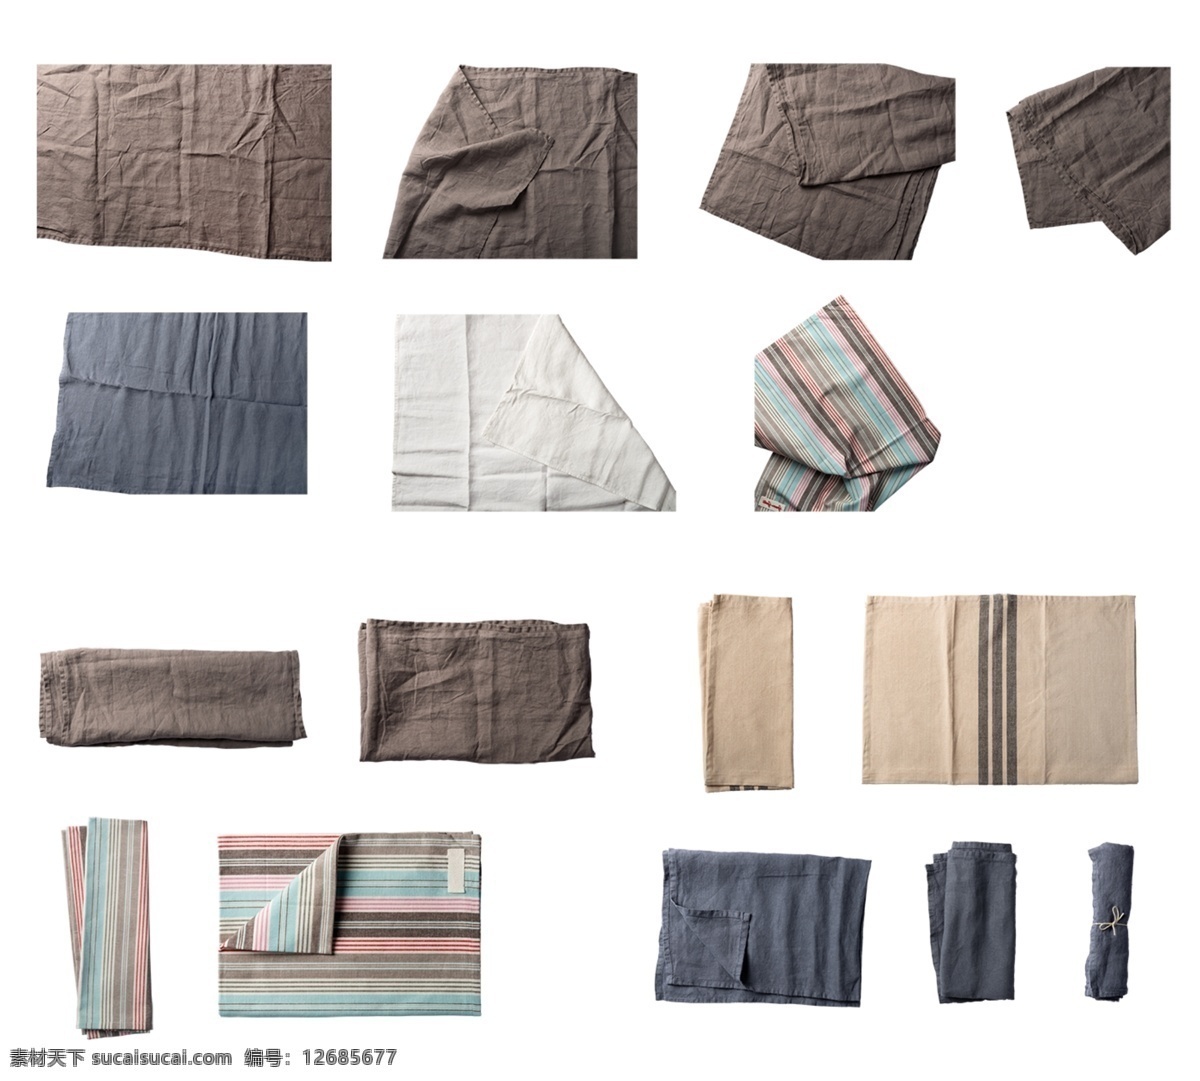 各种 类型 桌布 抹布 餐巾 布 餐布 布料 搭配 颜色